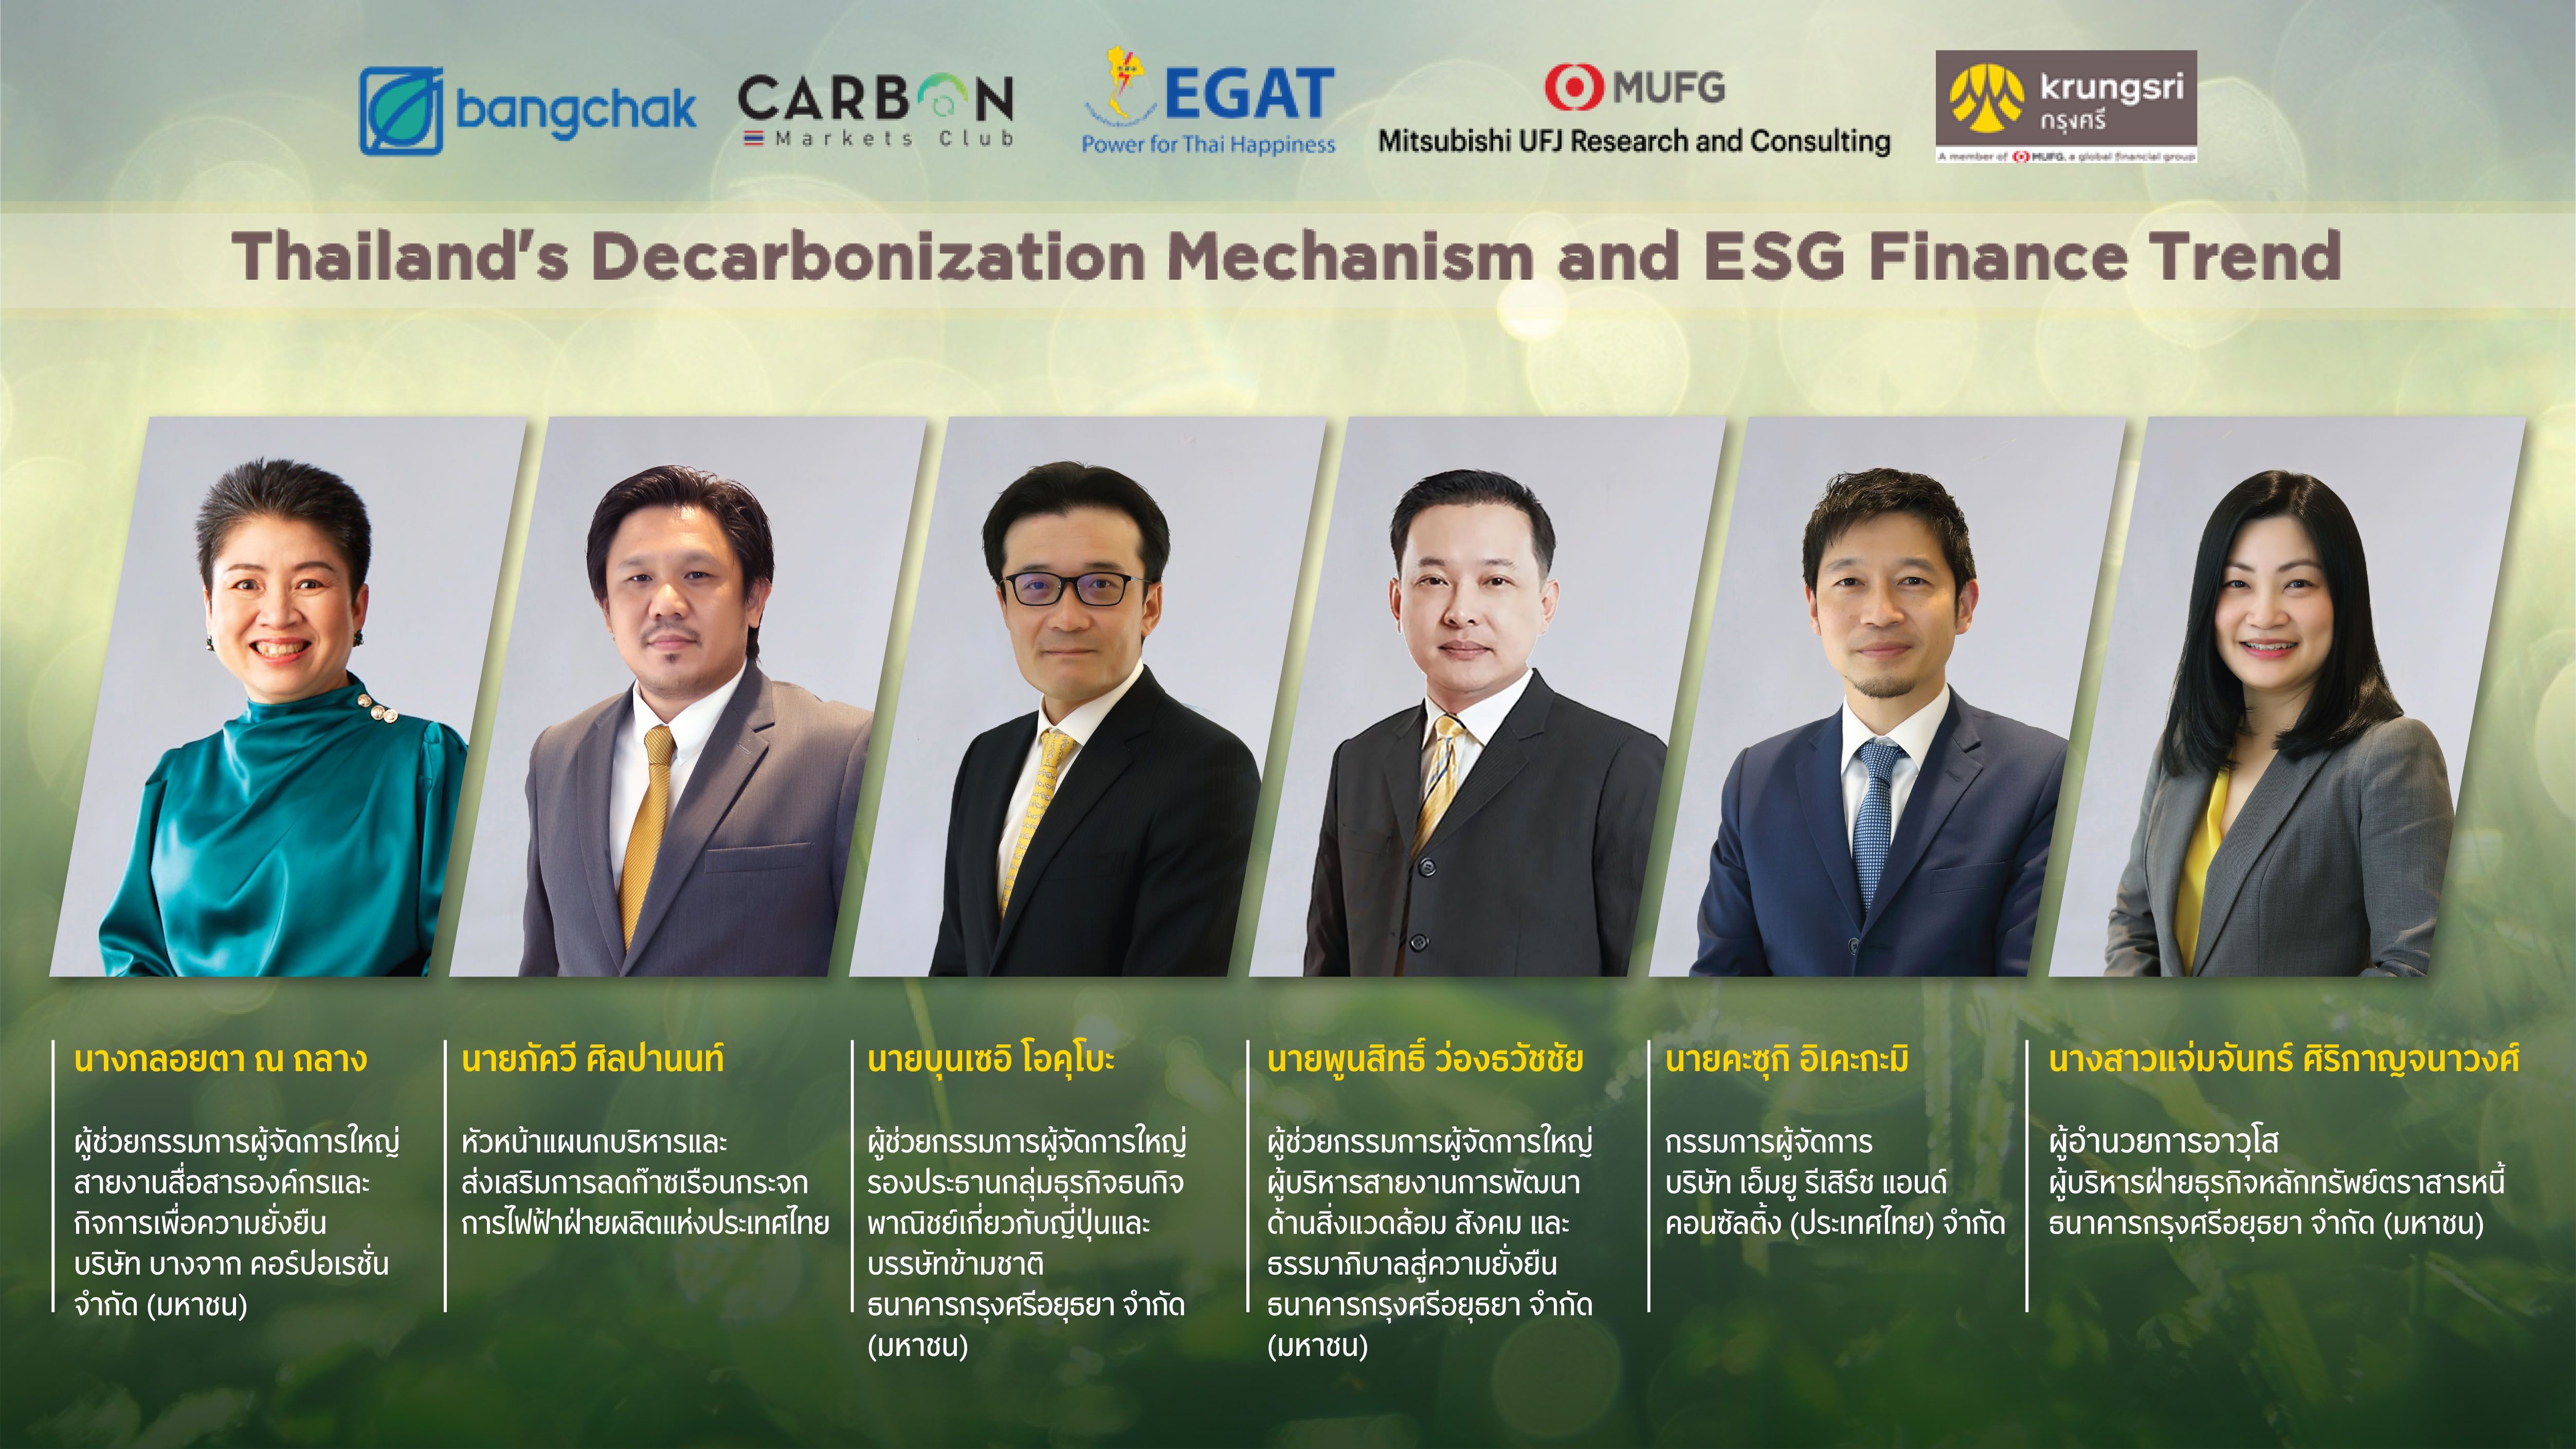 กรุงศรีร่วมกับผู้เชี่ยวชาญหลายองค์กรจัดสัมมนาออนไลน์ในหัวข้อ “Thailand’s Decarbonization Mechanism and ESG Finance Trend”